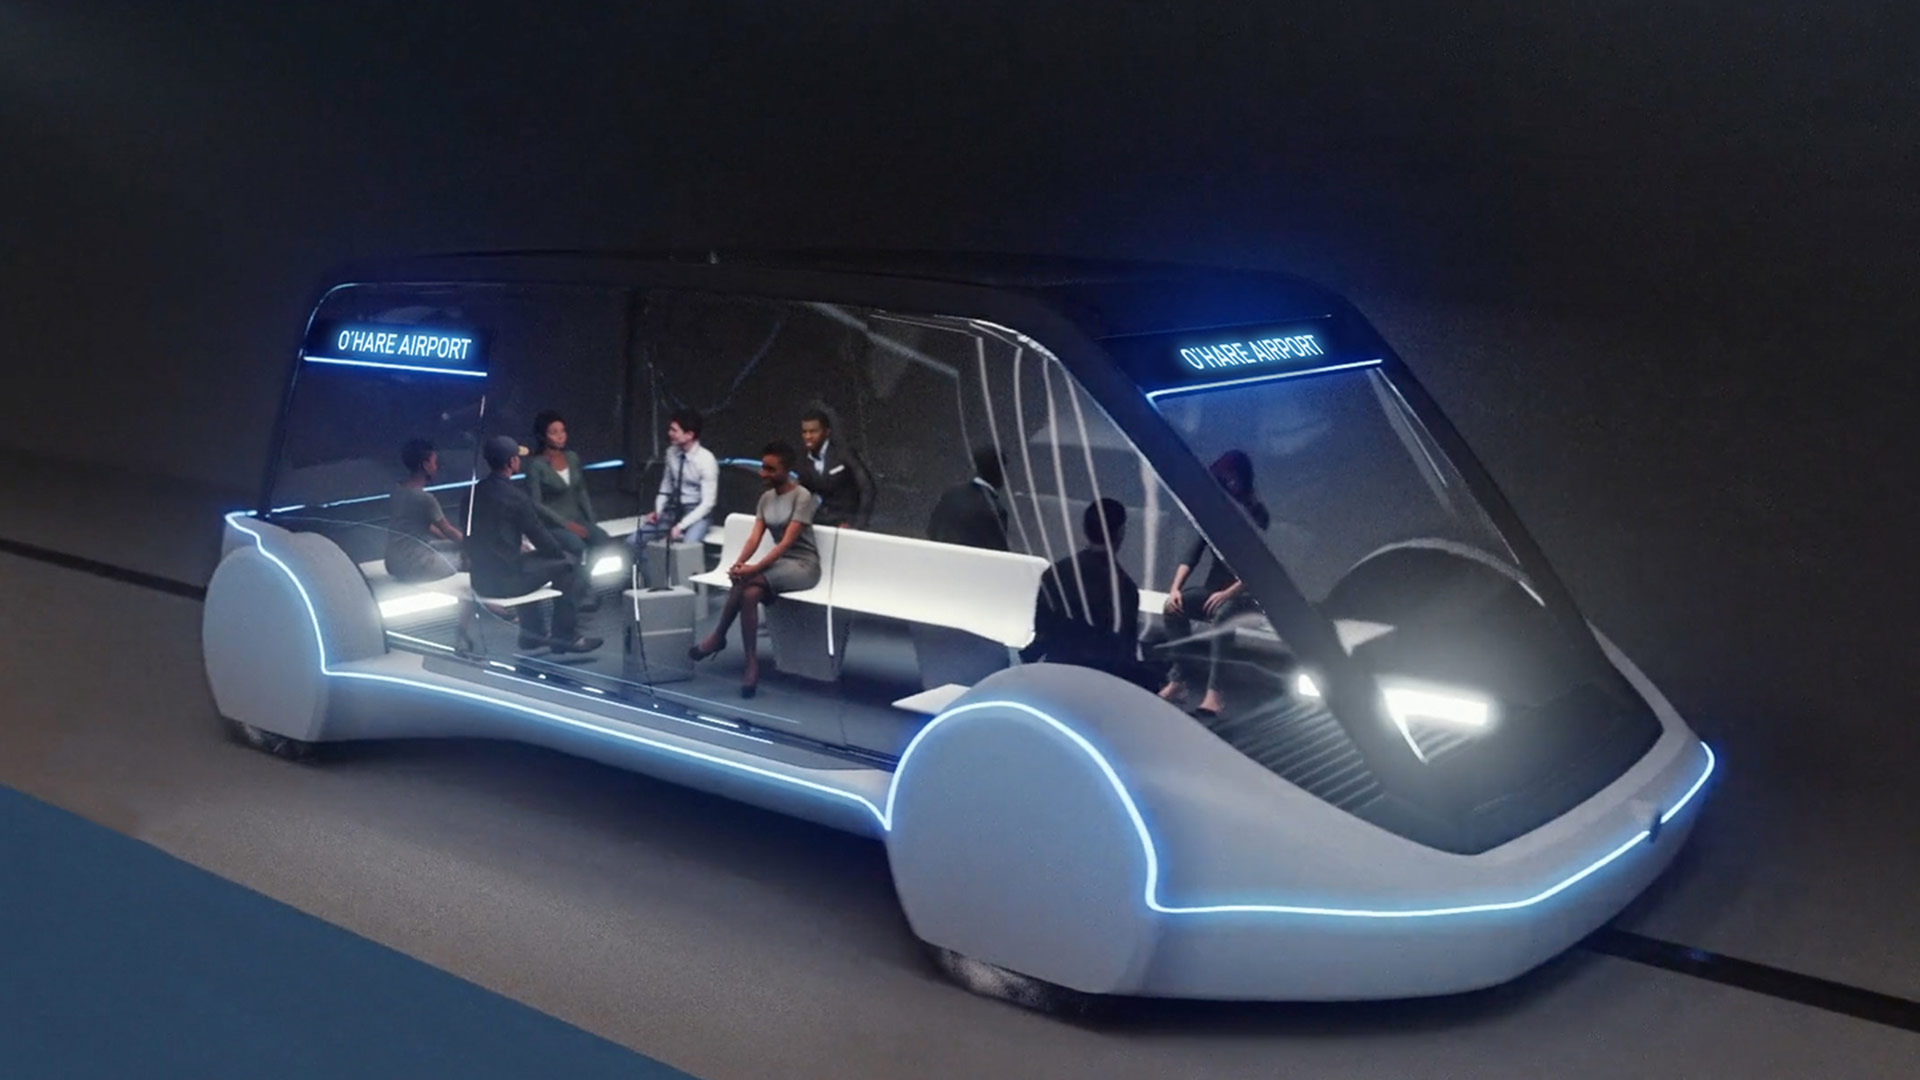 ‘La compañía aburrida’ de Elon Musk construirá un tren ultrarrápido para llegar al aeropuerto en minutos